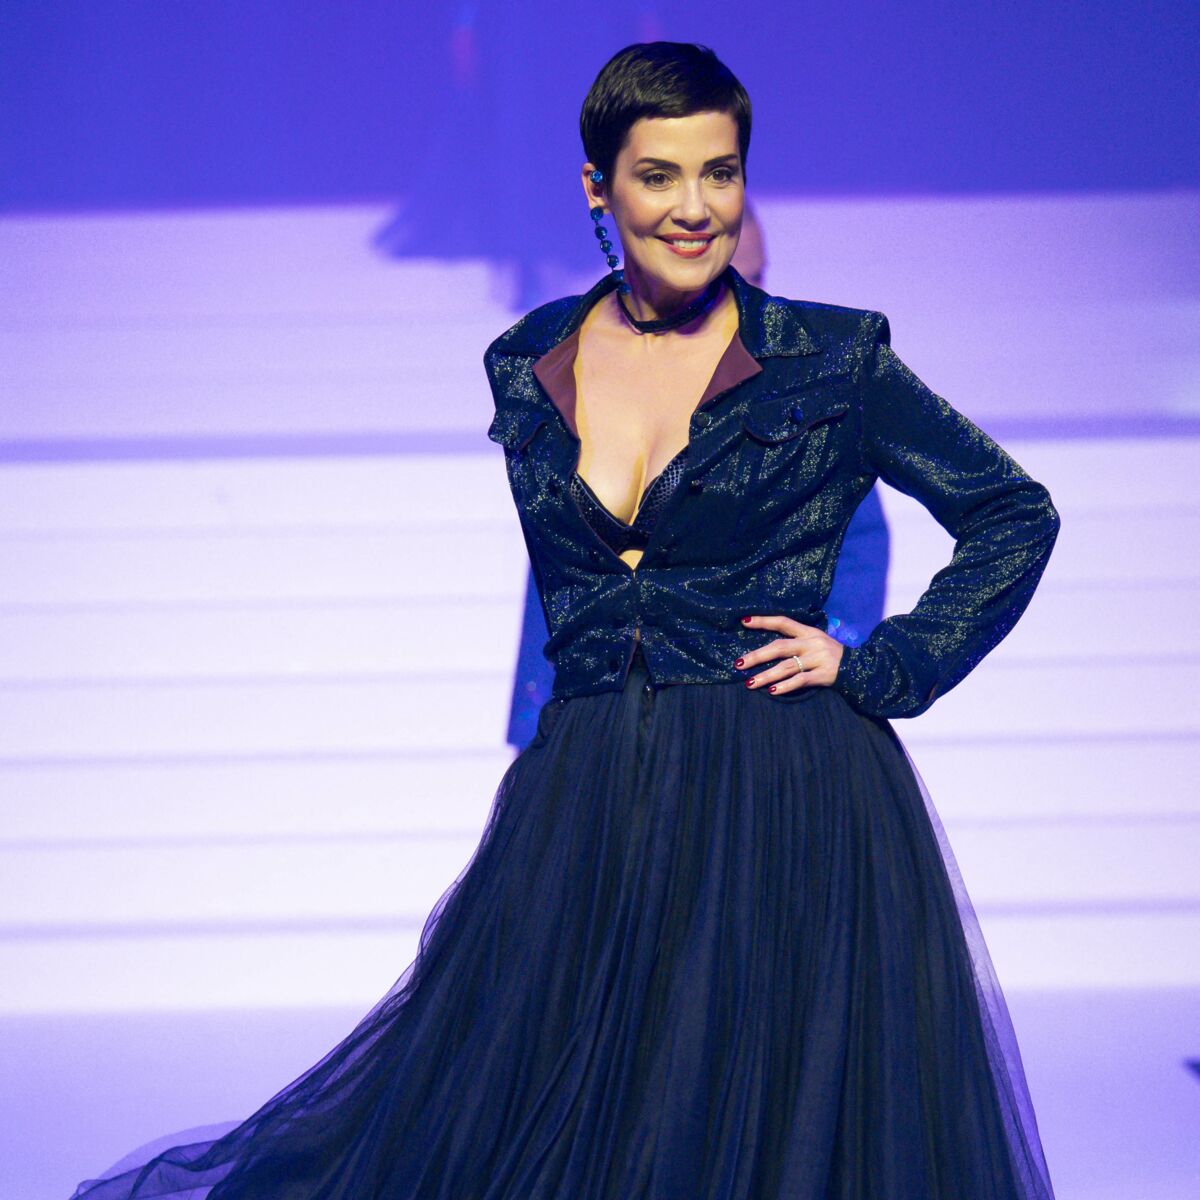 Conseils Mode : découvrez les magnifiques conseils de Cristina Cordula pour choisir la meilleure robe pour cet automne 2021 !